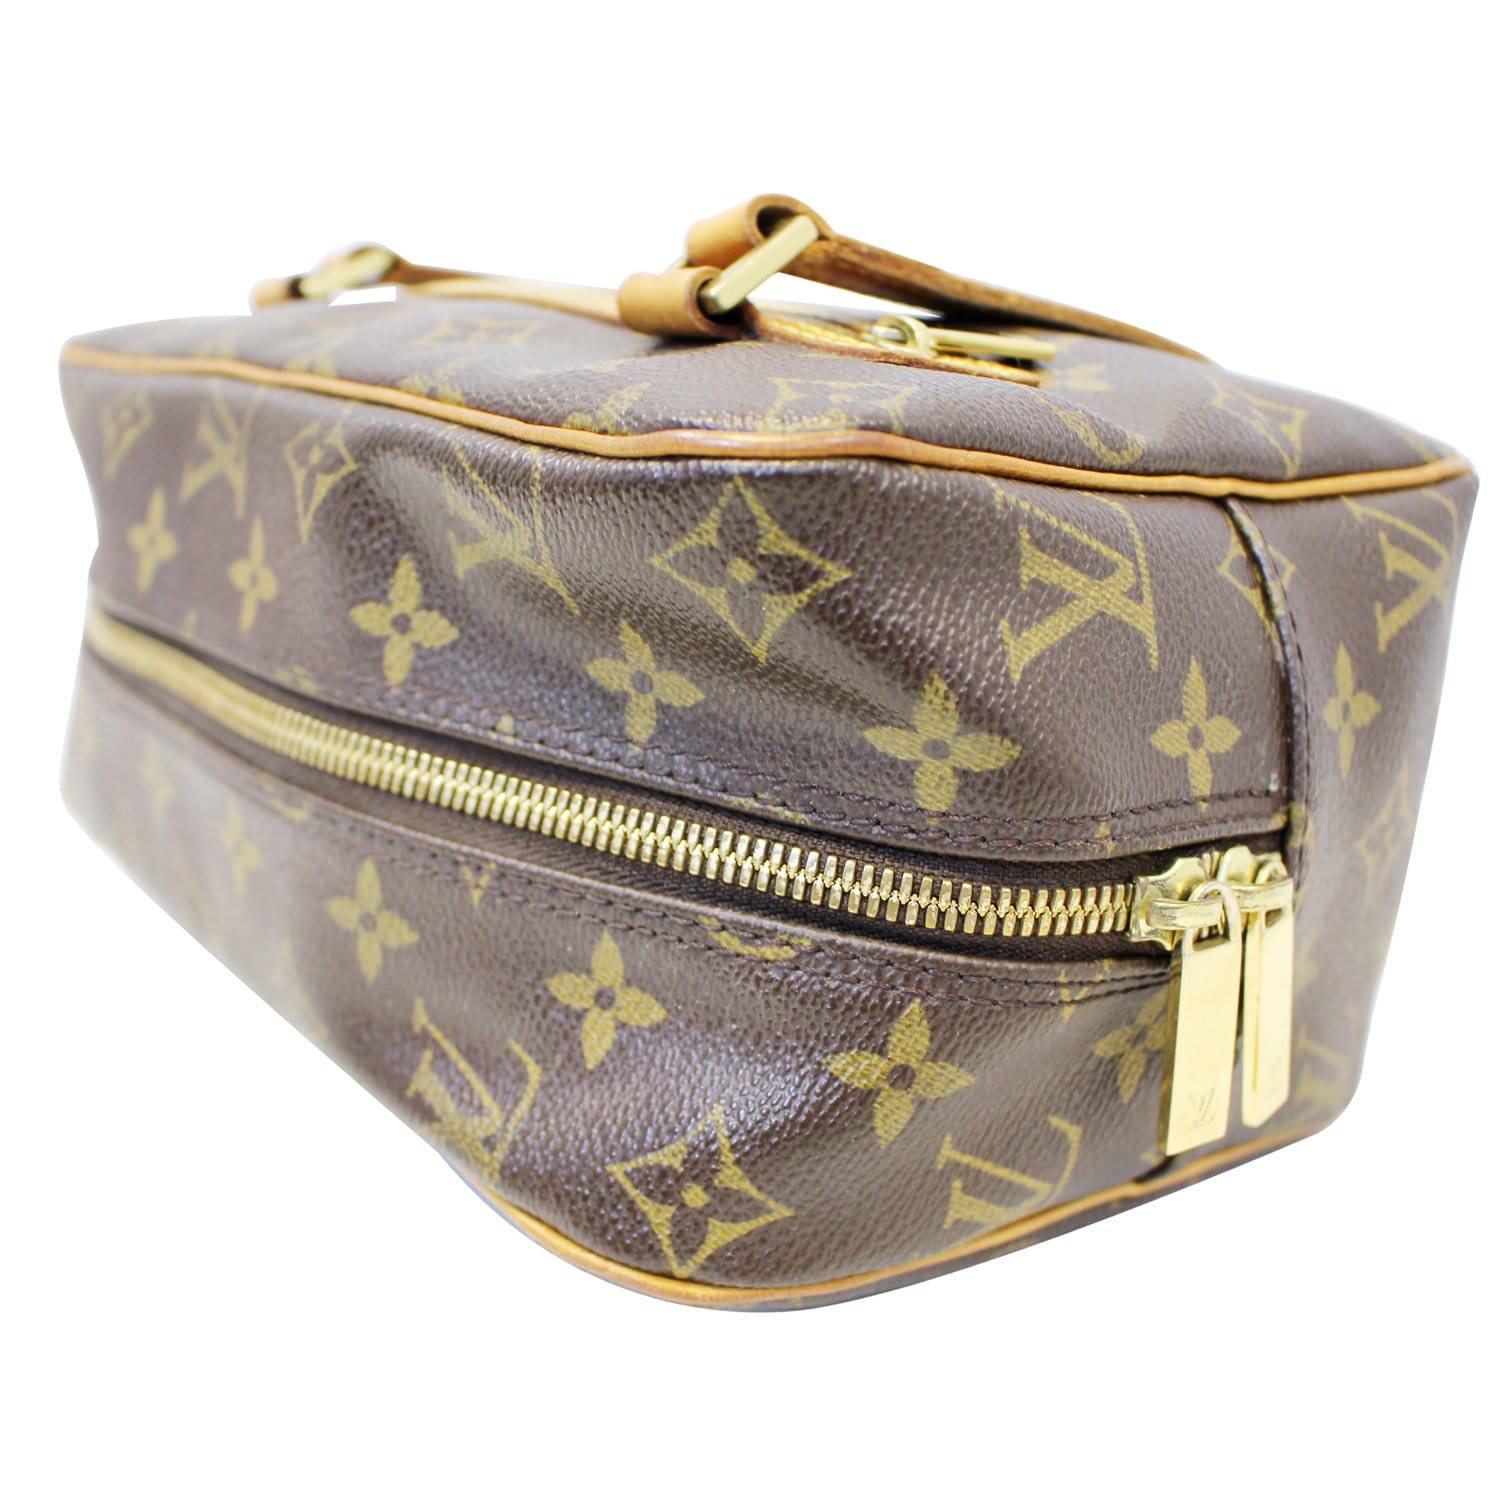 Louis Vuitton Cite MM Bag - Brown Shoulder Bags, Handbags - LOU23903